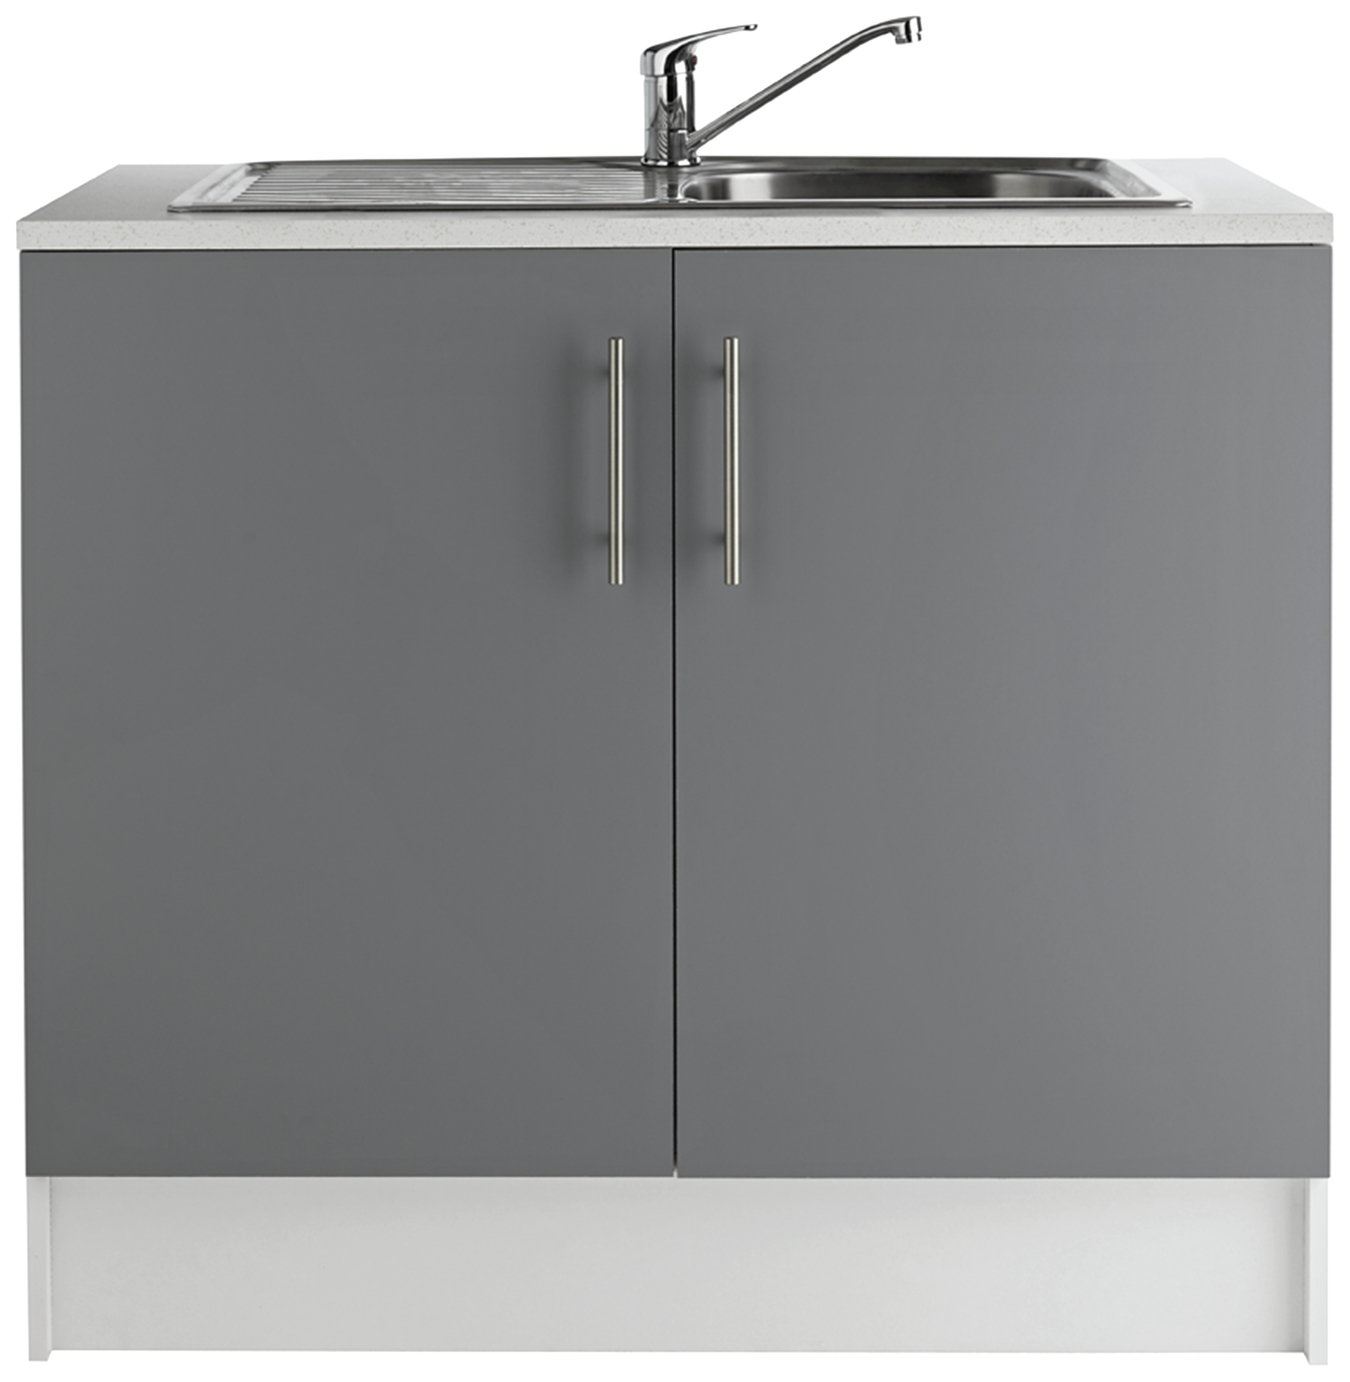 Argos Home Athina 1000mm S. Steel Kitchen Sink Unit - Grey